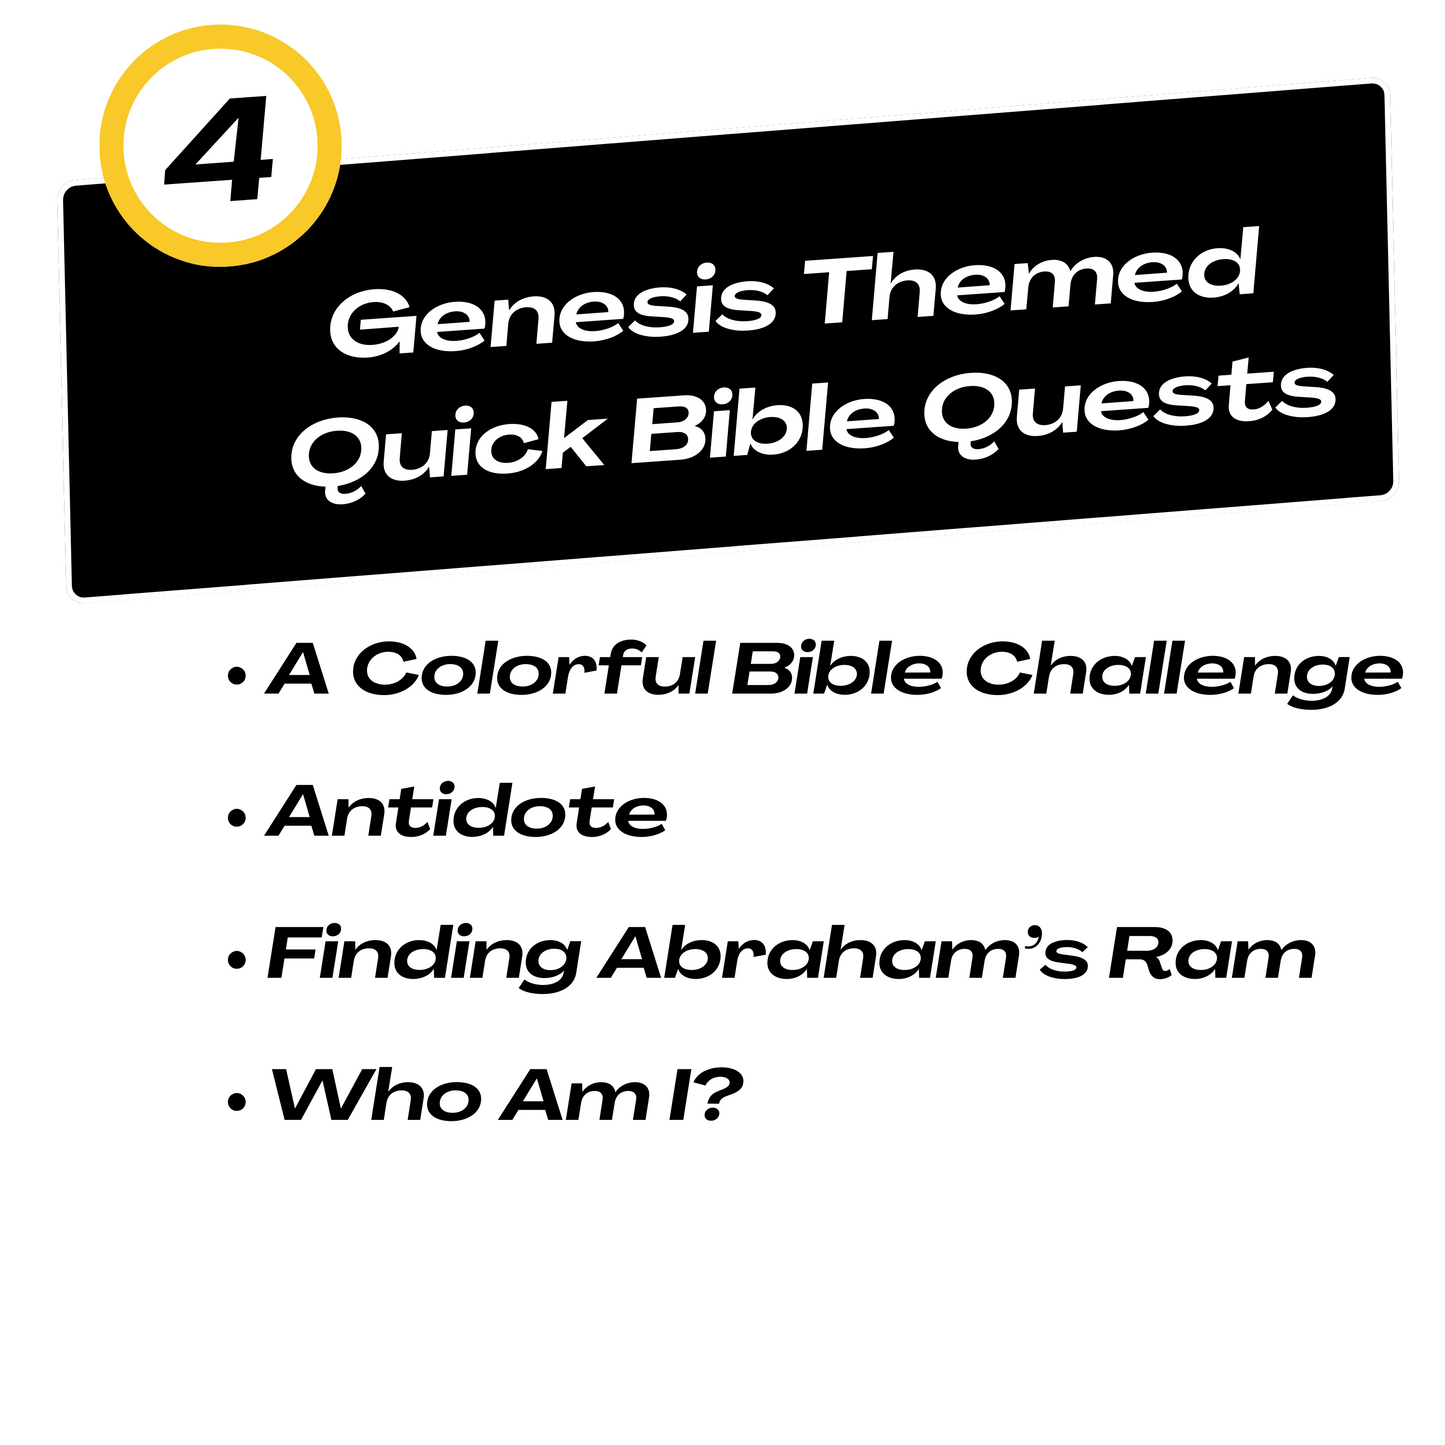 Quick Bible Quest: Genesis Bundle